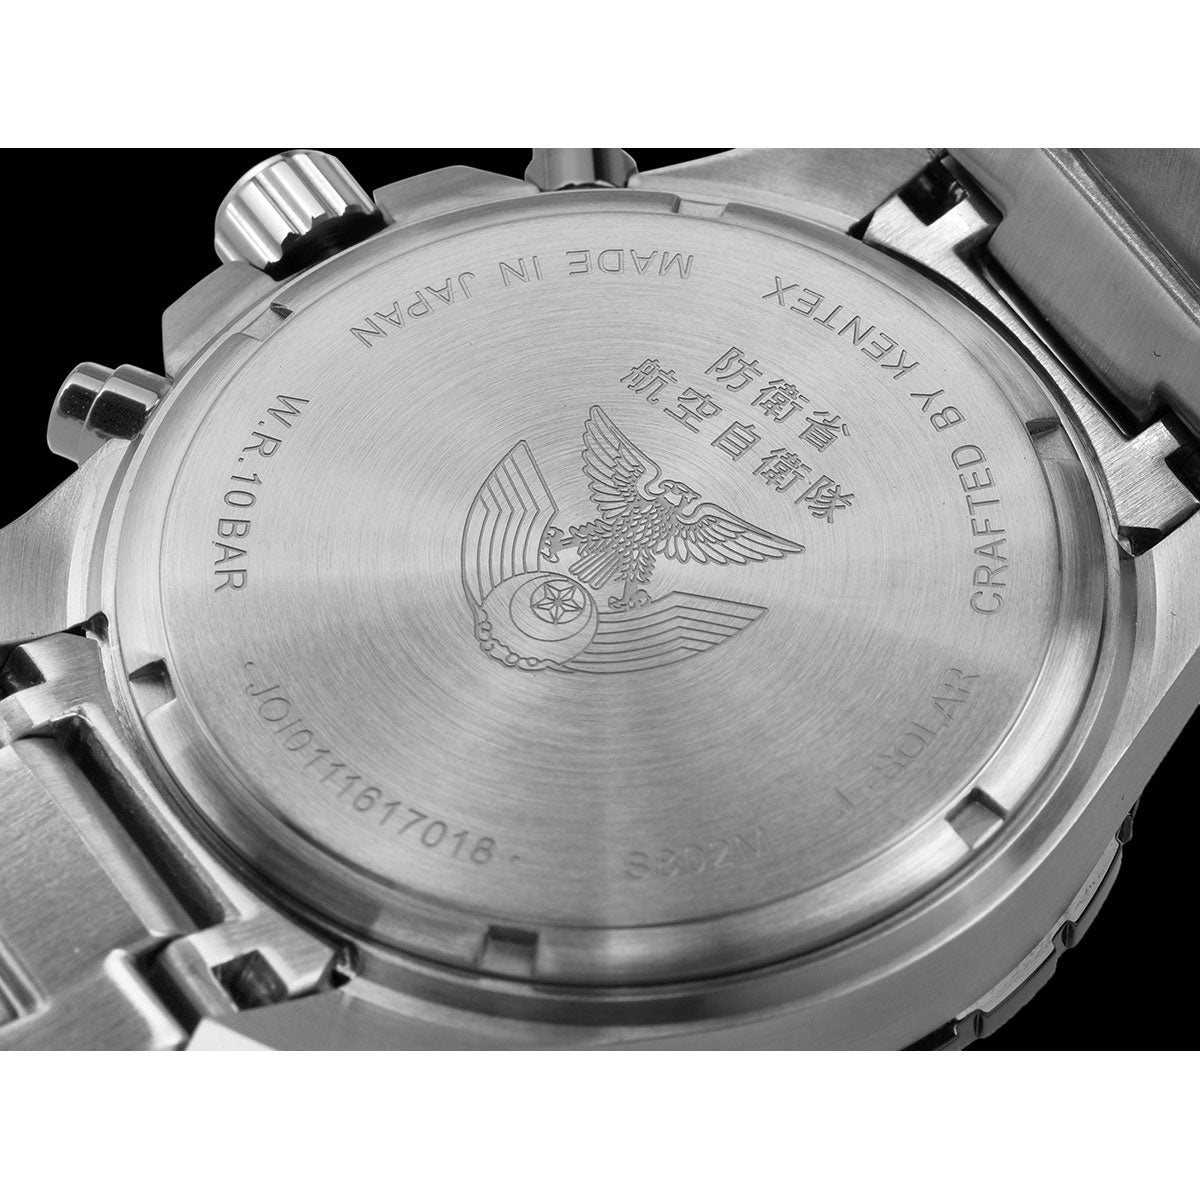 ケンテックス KENTEX ソーラー 腕時計 時計 メンズ JASDF 航空自衛隊 ソーラープロ JSDF SOLAR Pro クロノグラフ 日本製 S802M-1